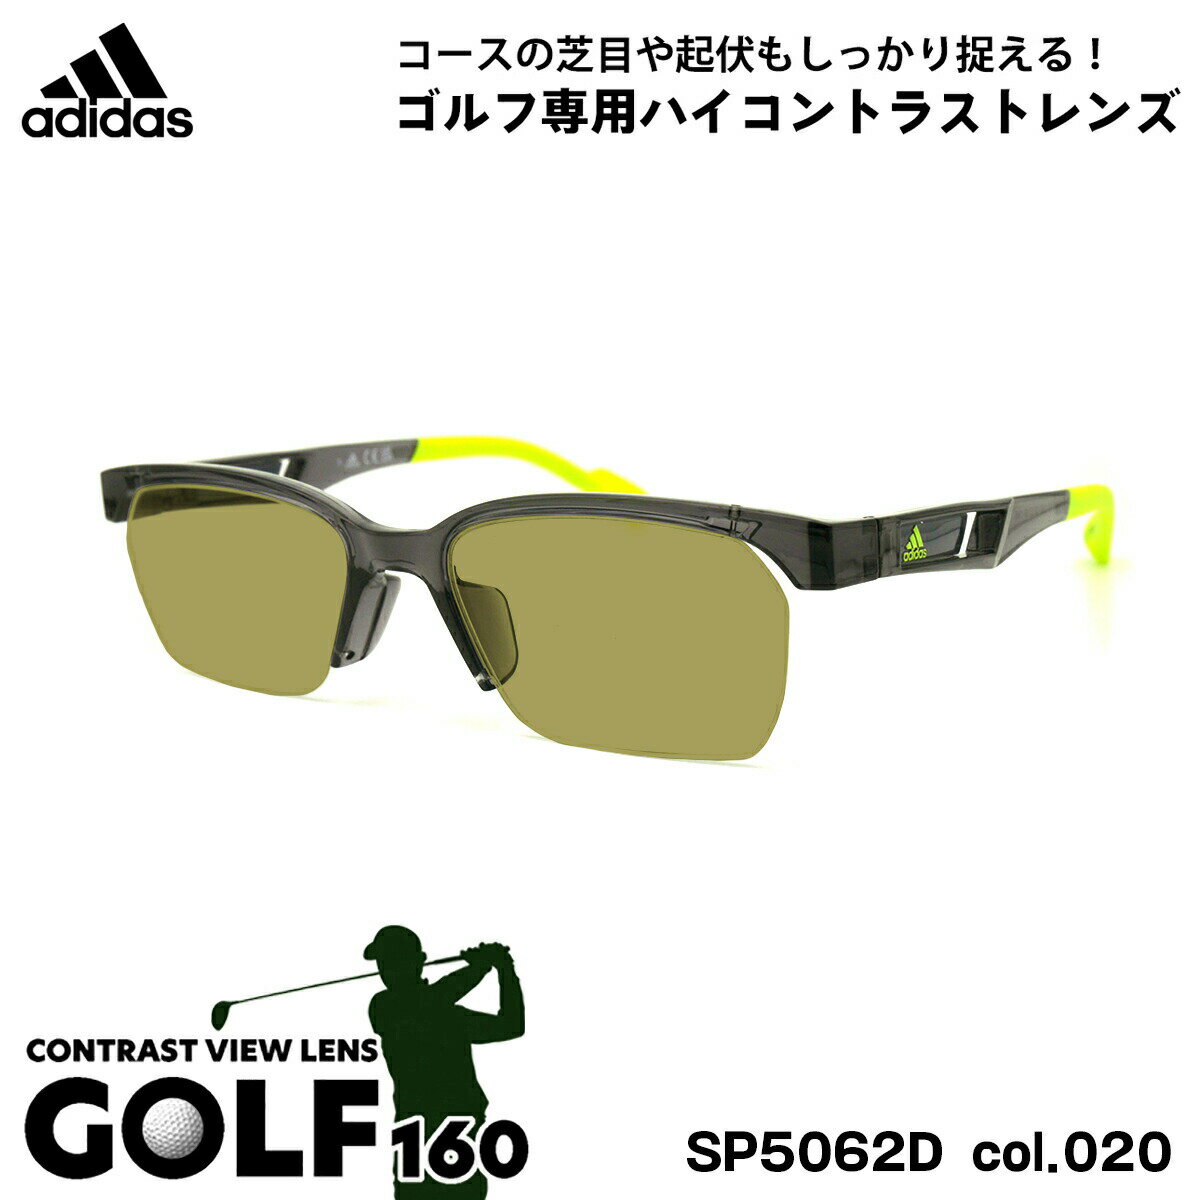 アディダス アディダス サングラス ゴルフ SP5062D (SP5062D/V) col.020 52mm adidas アジアンフィット 国内正規品 UVカット メンズ レディース GOLF160